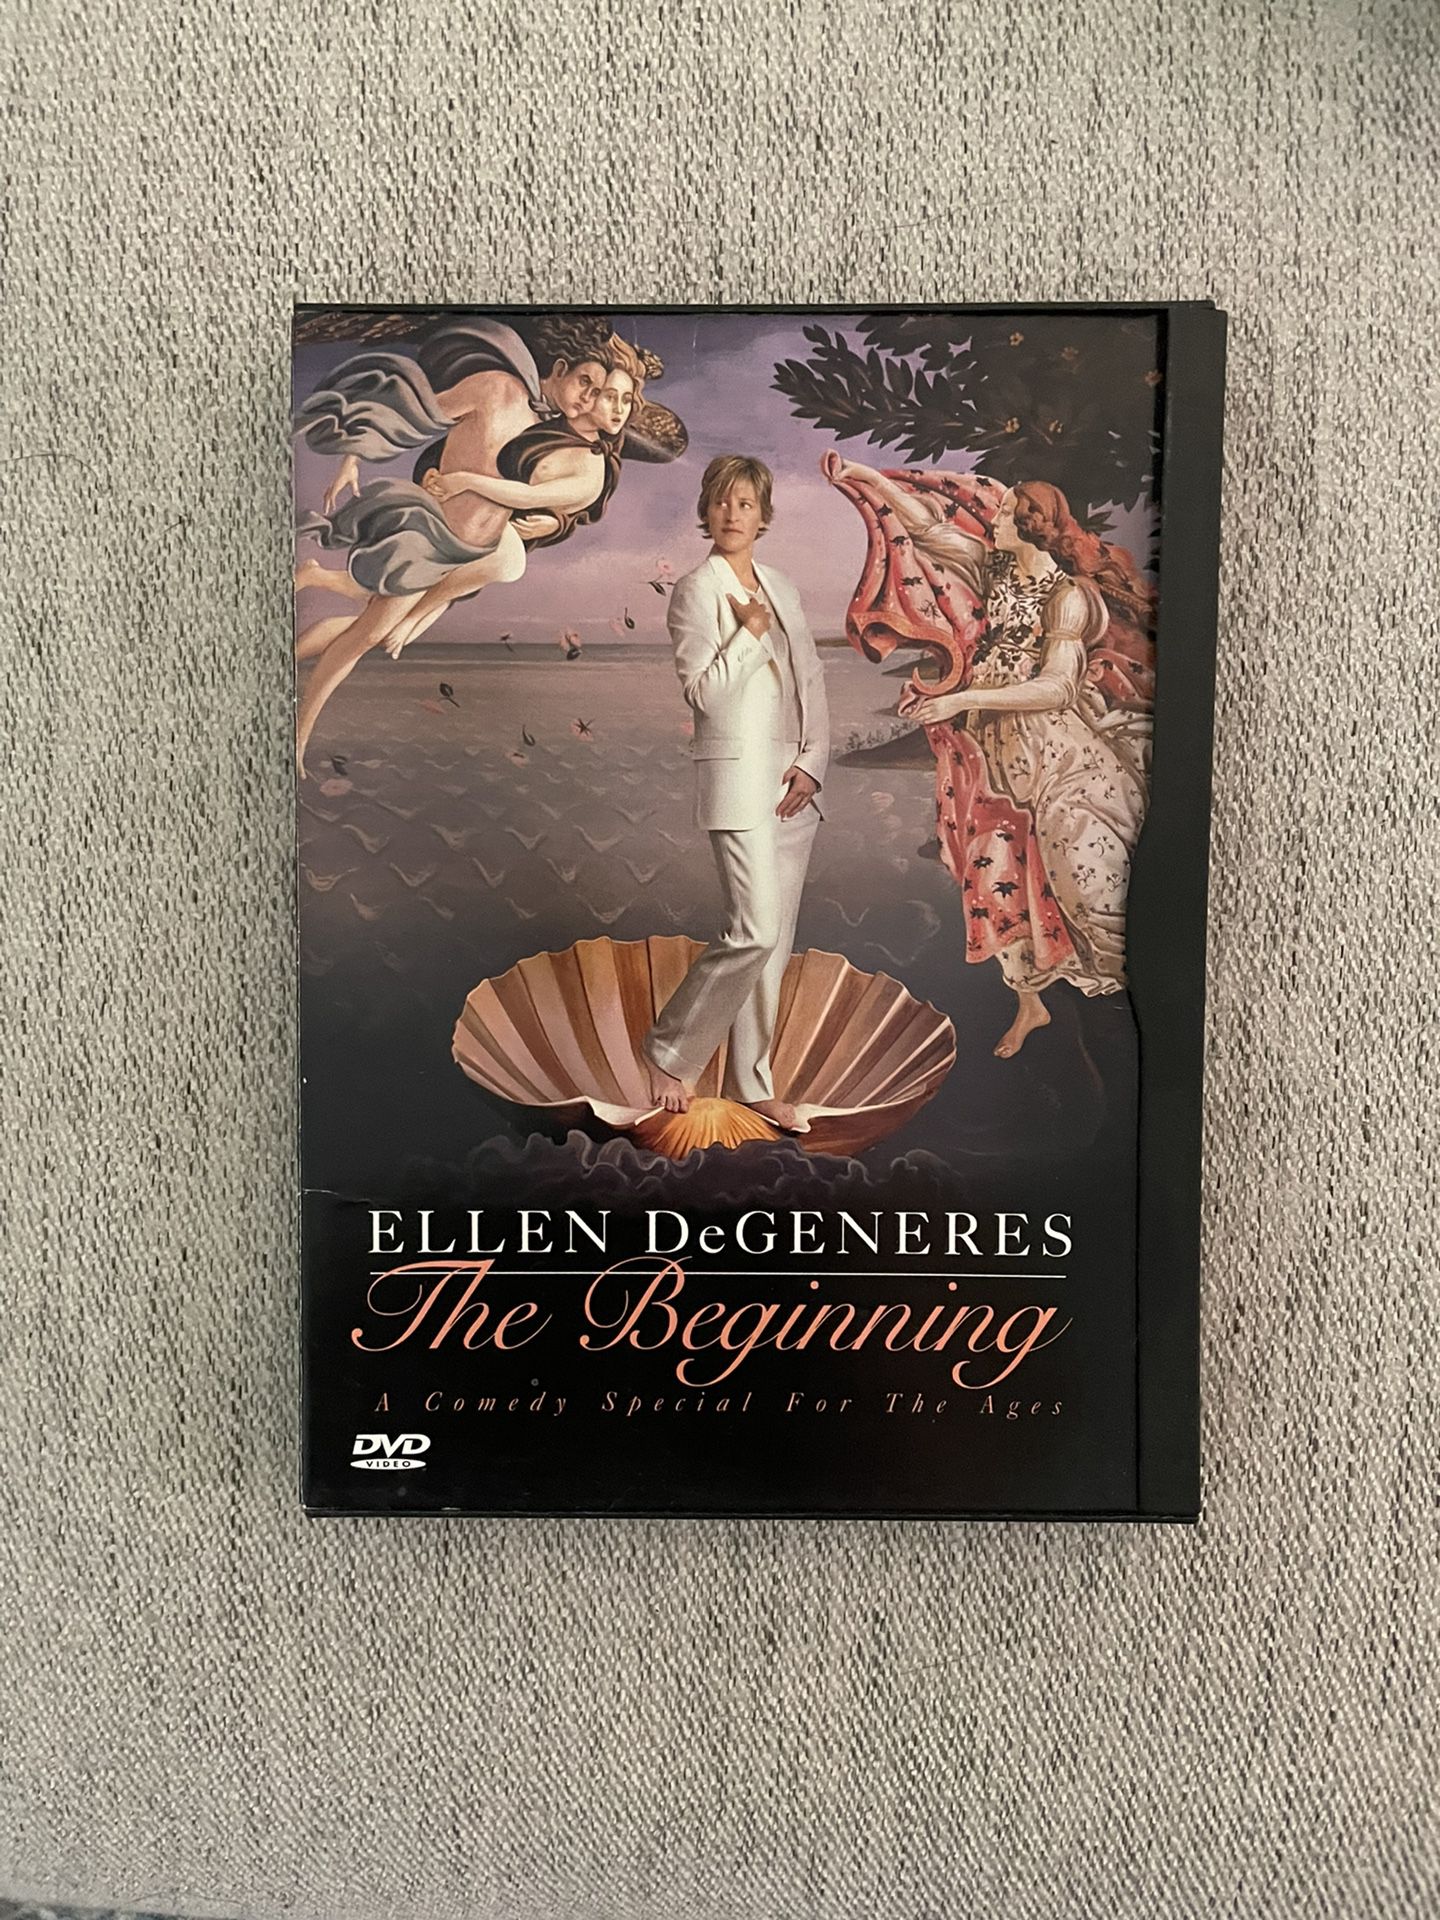 Ellen Degeneres The Beginning DVD - Gently Used